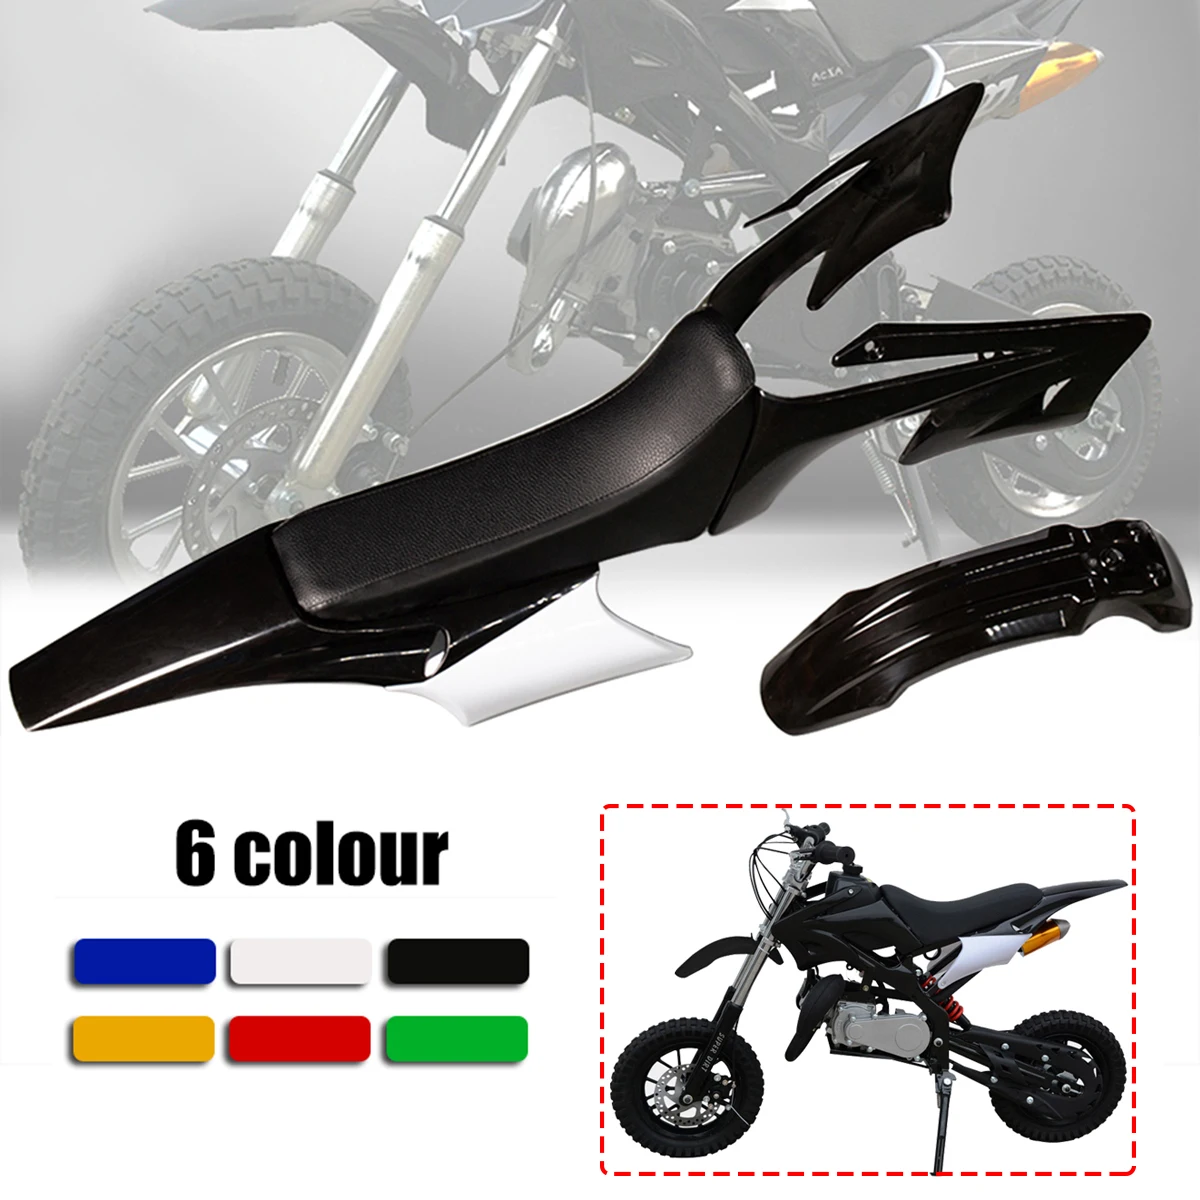 Motorrad Kunststoff Verkleidung Kits Für Mini Pit Bike Dirt Bike Kunststoff Abdeckung Fit Für Apollo110cc/125cc